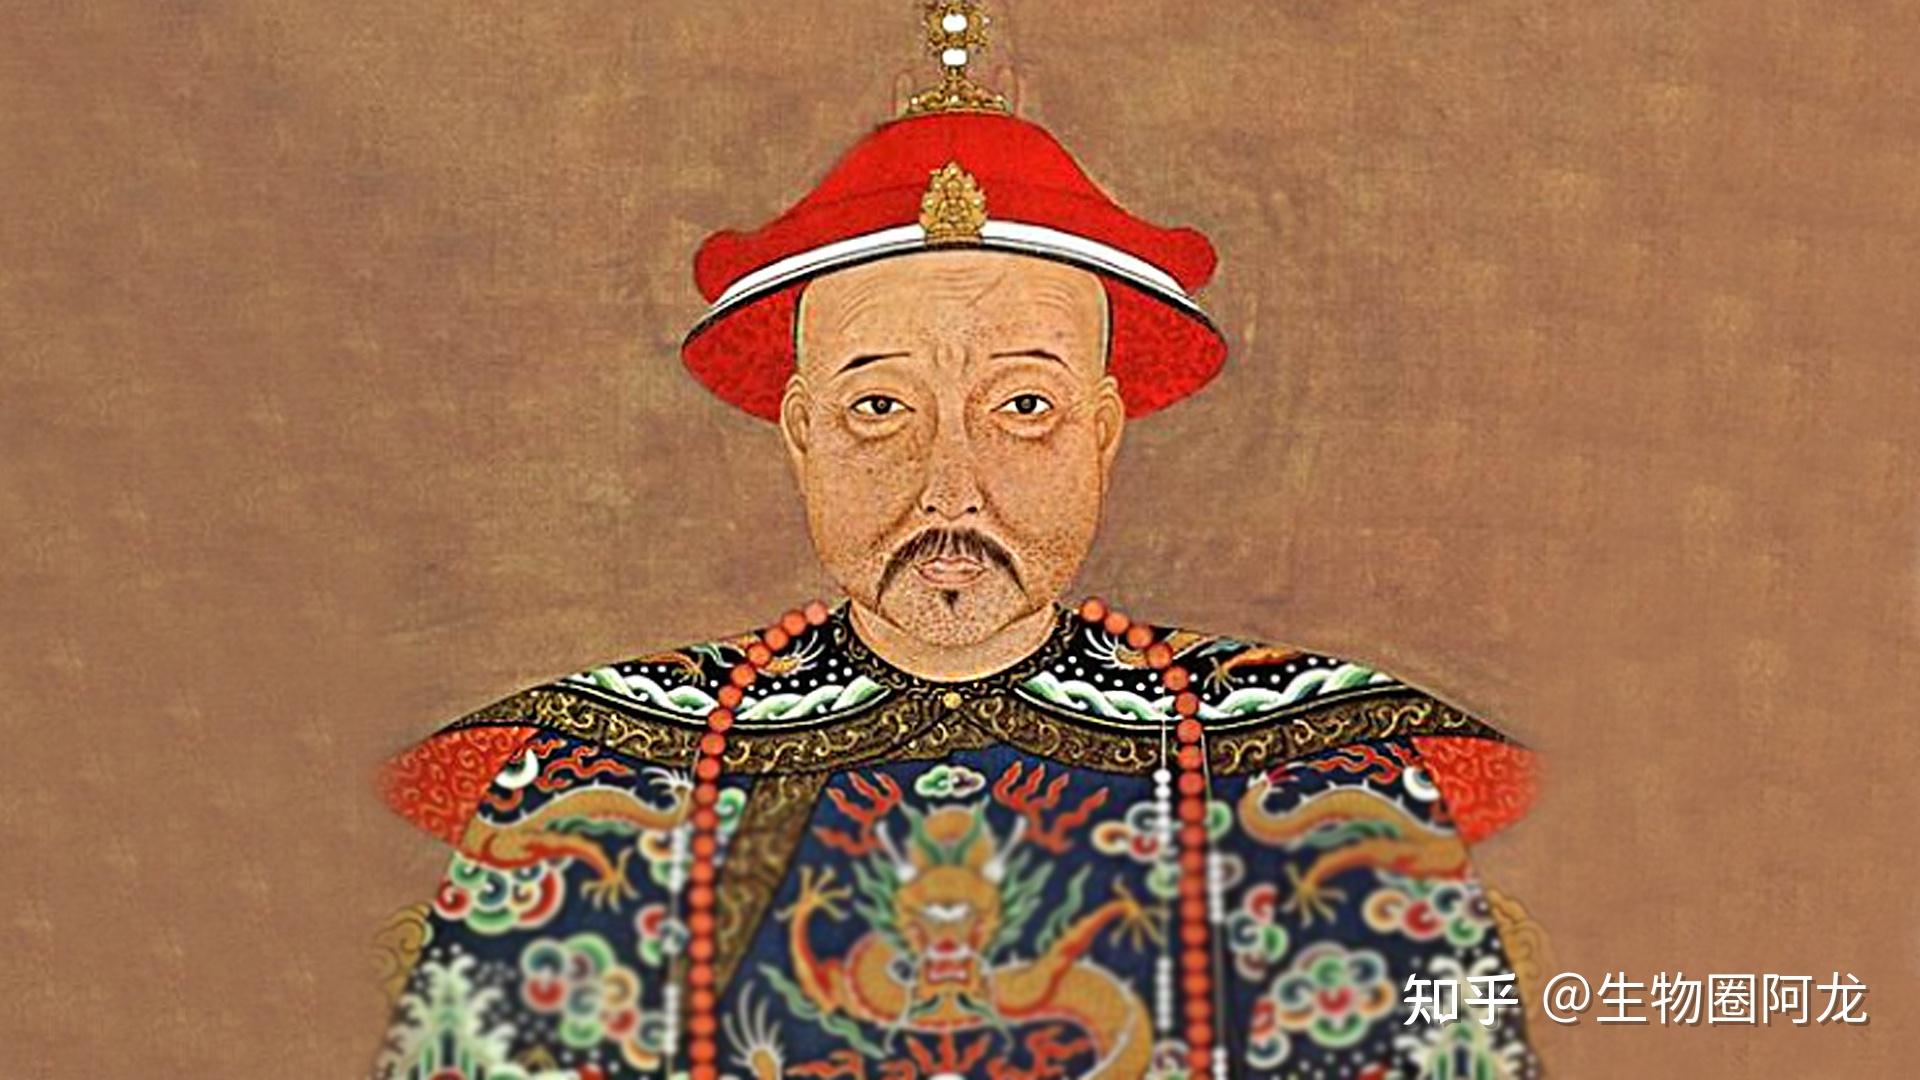 麻脸皇帝:康熙作为一种烈性传染病,天花是令人闻风丧胆的死神帮凶